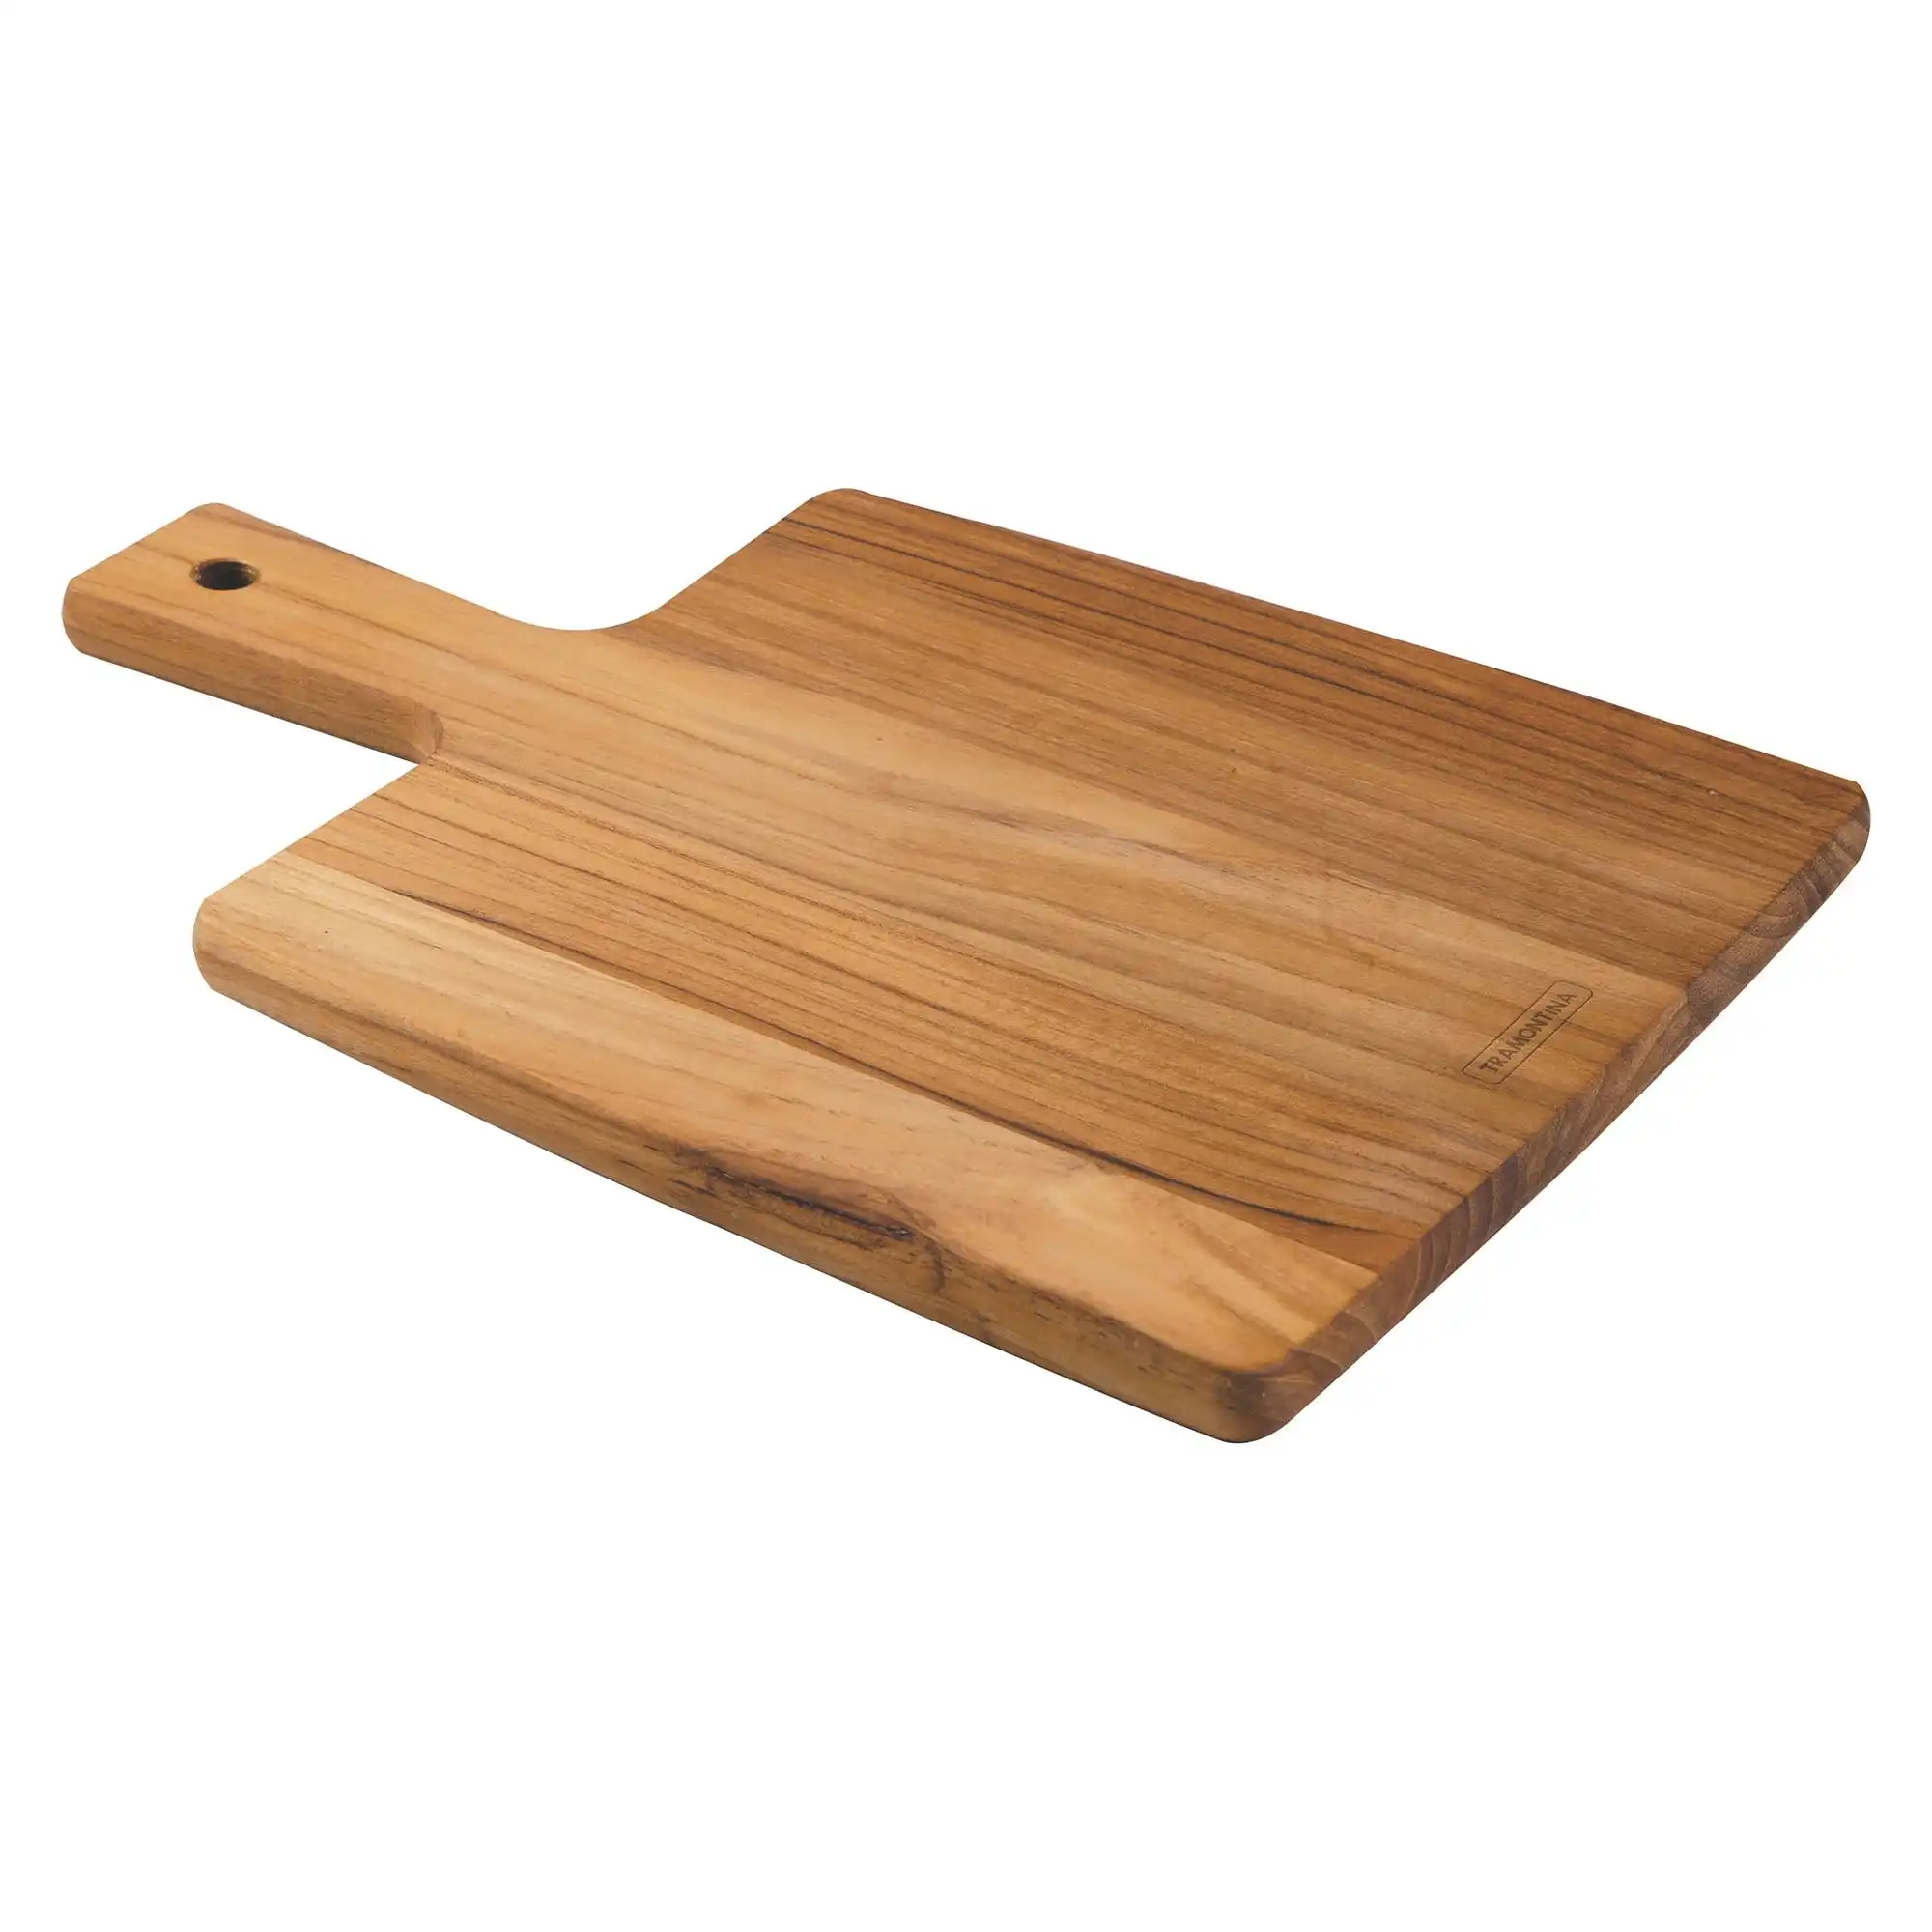 Tramontina Cutting Board Cutting Board With Handle, Teak Wood 340x230mm